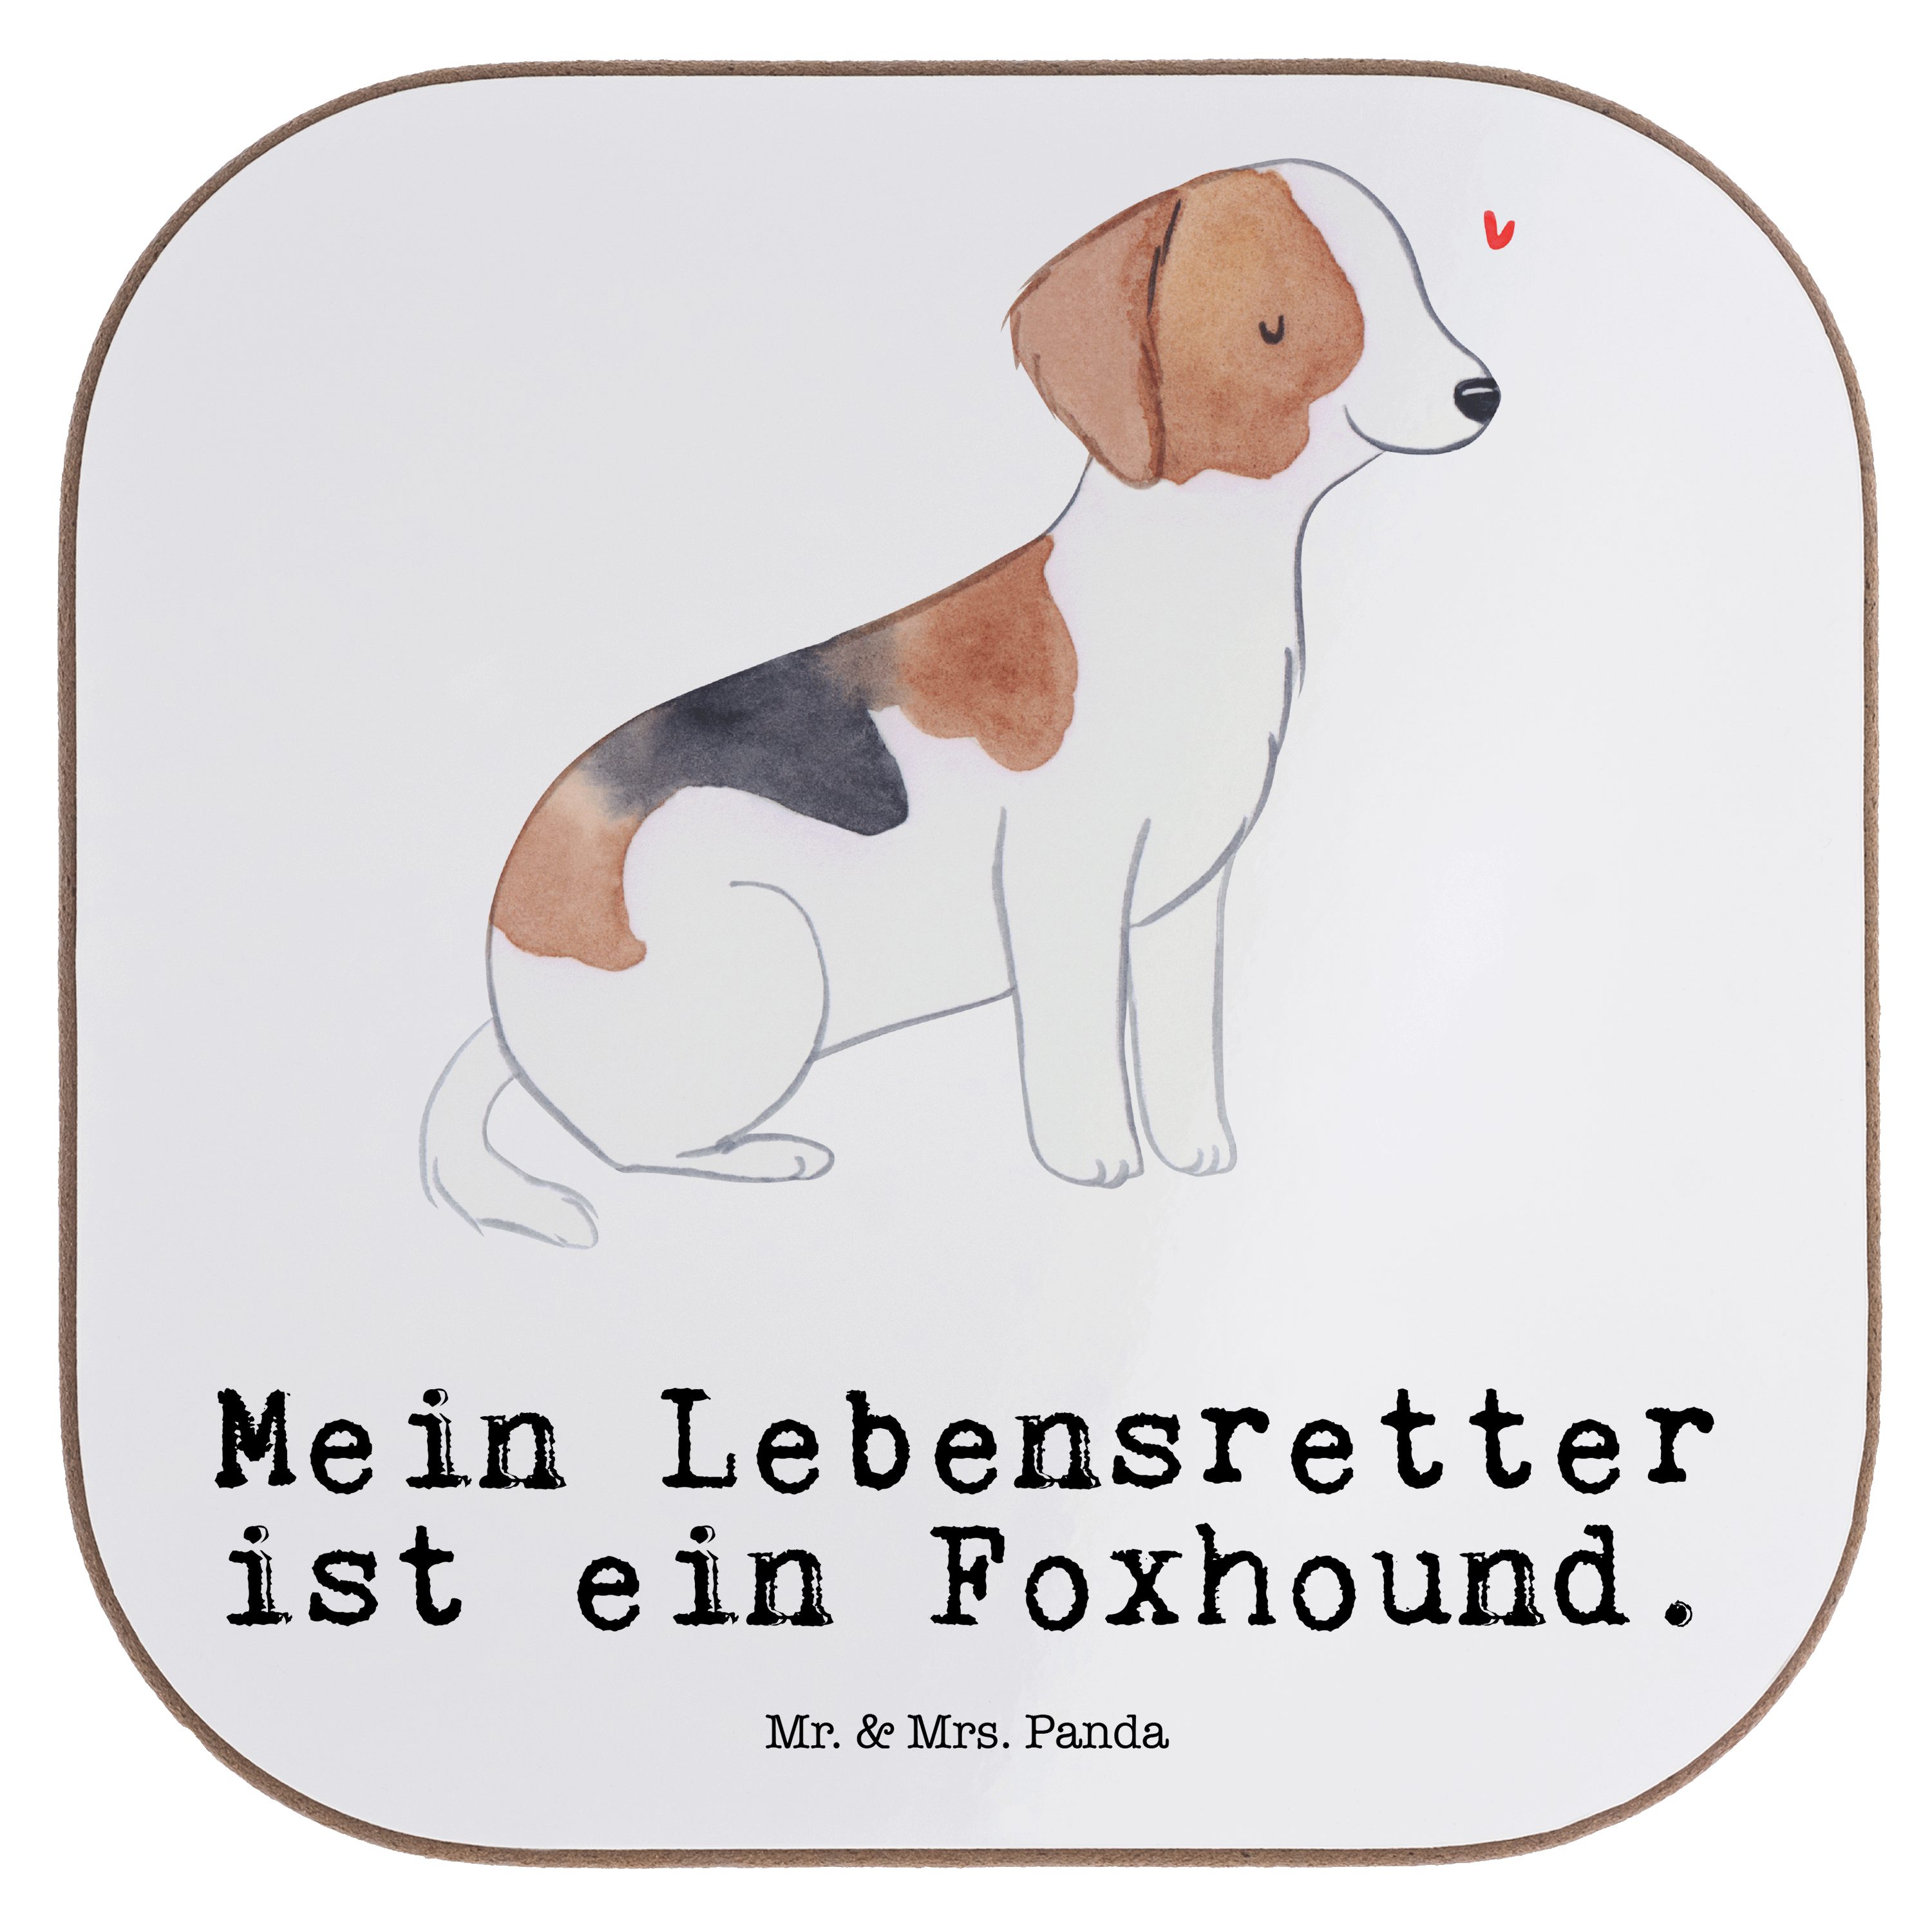 Mr. & Mrs. Panda Getränkeuntersetzer Foxhound Lebensretter - Weiß - Geschenk, Untersetzer Gläser, Jagdhund, 1-tlg.